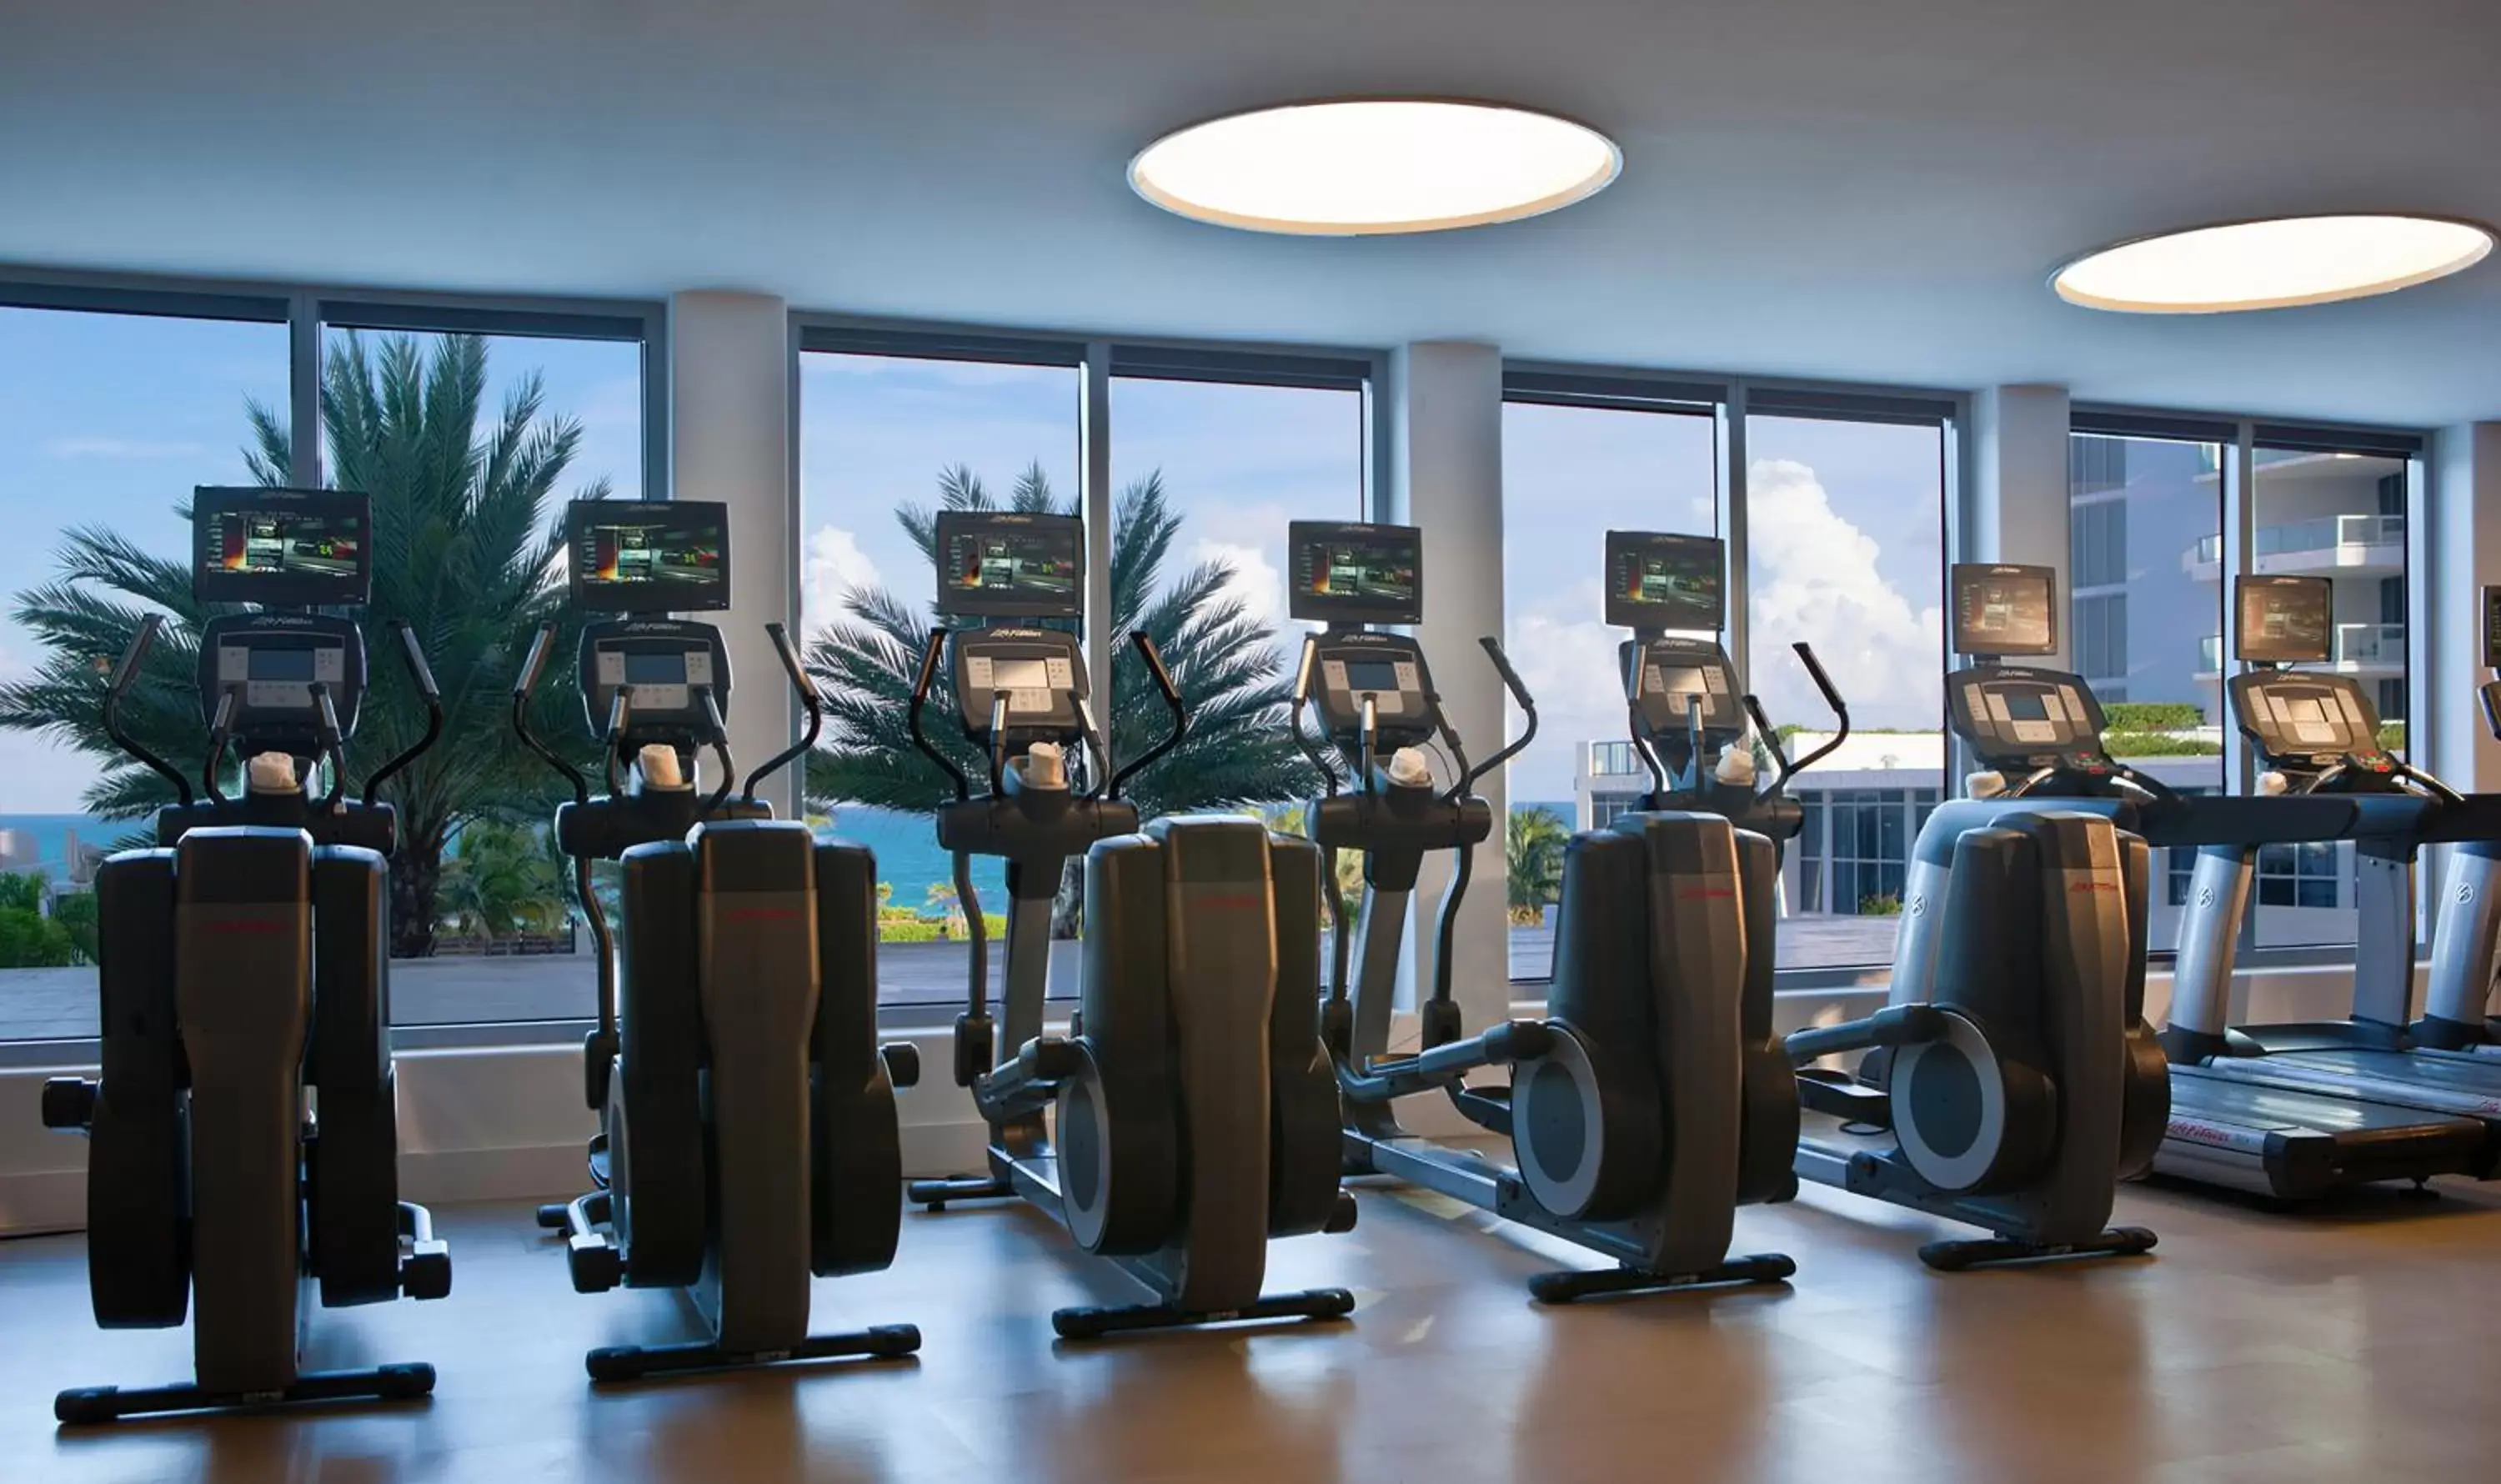 Fitness centre/facilities, Fitness Center/Facilities in Eden Roc Miami Beach